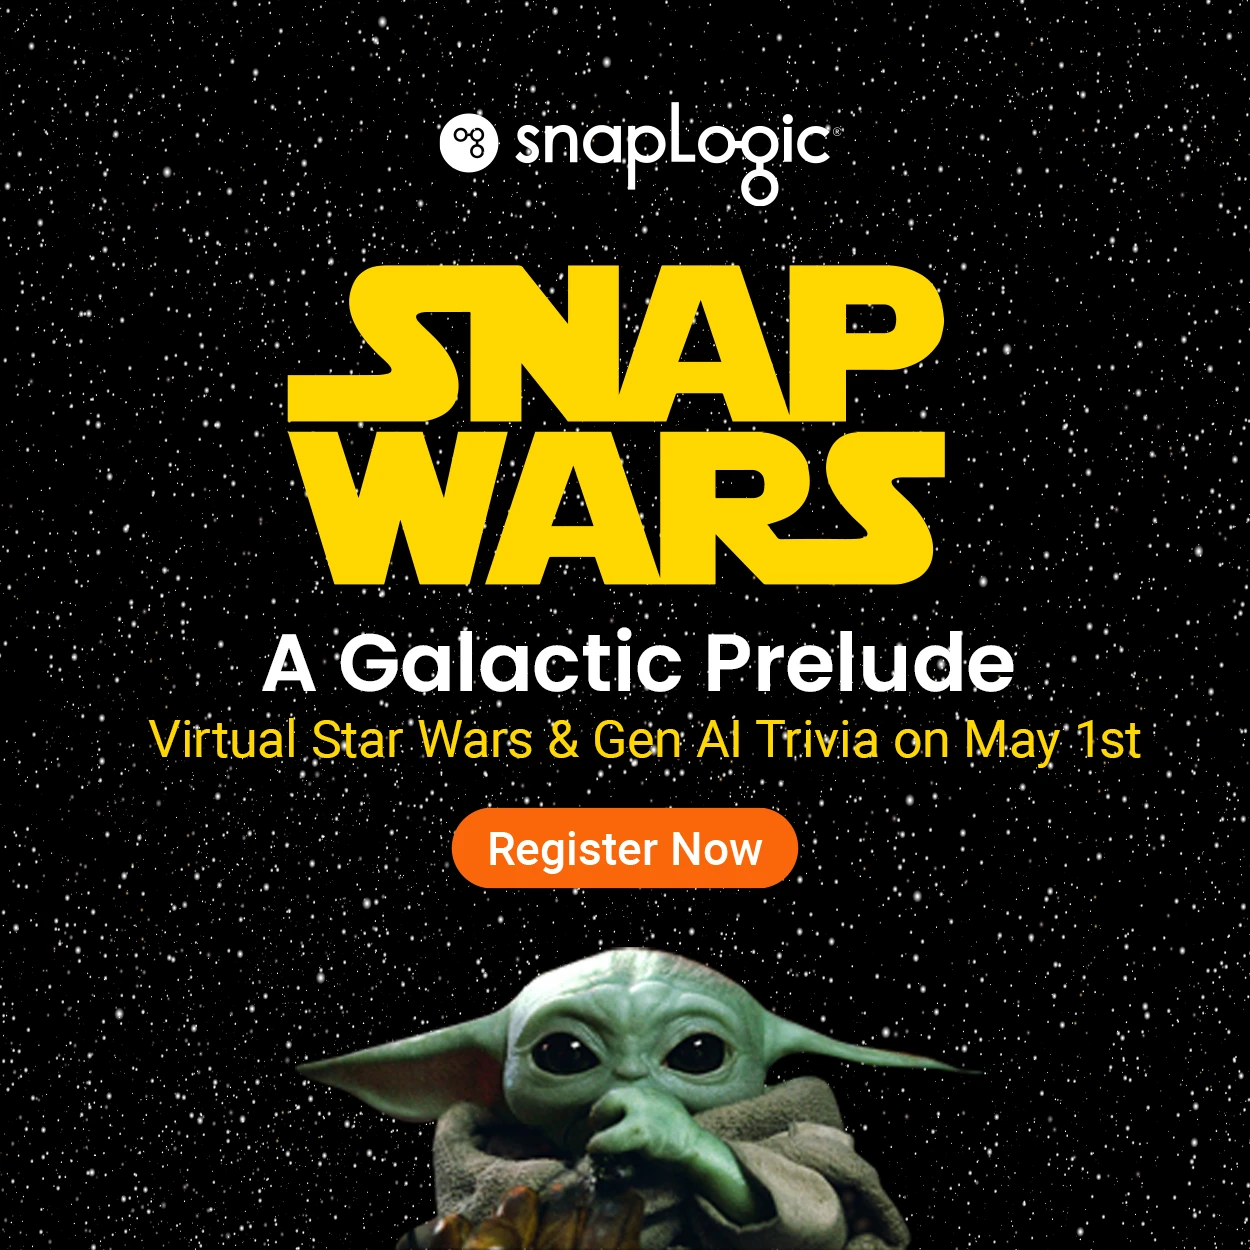 SnapWars Ein galaktisches Vorspiel: Virtuelle Star Wars und Gen AI Trivia am 1. Mai